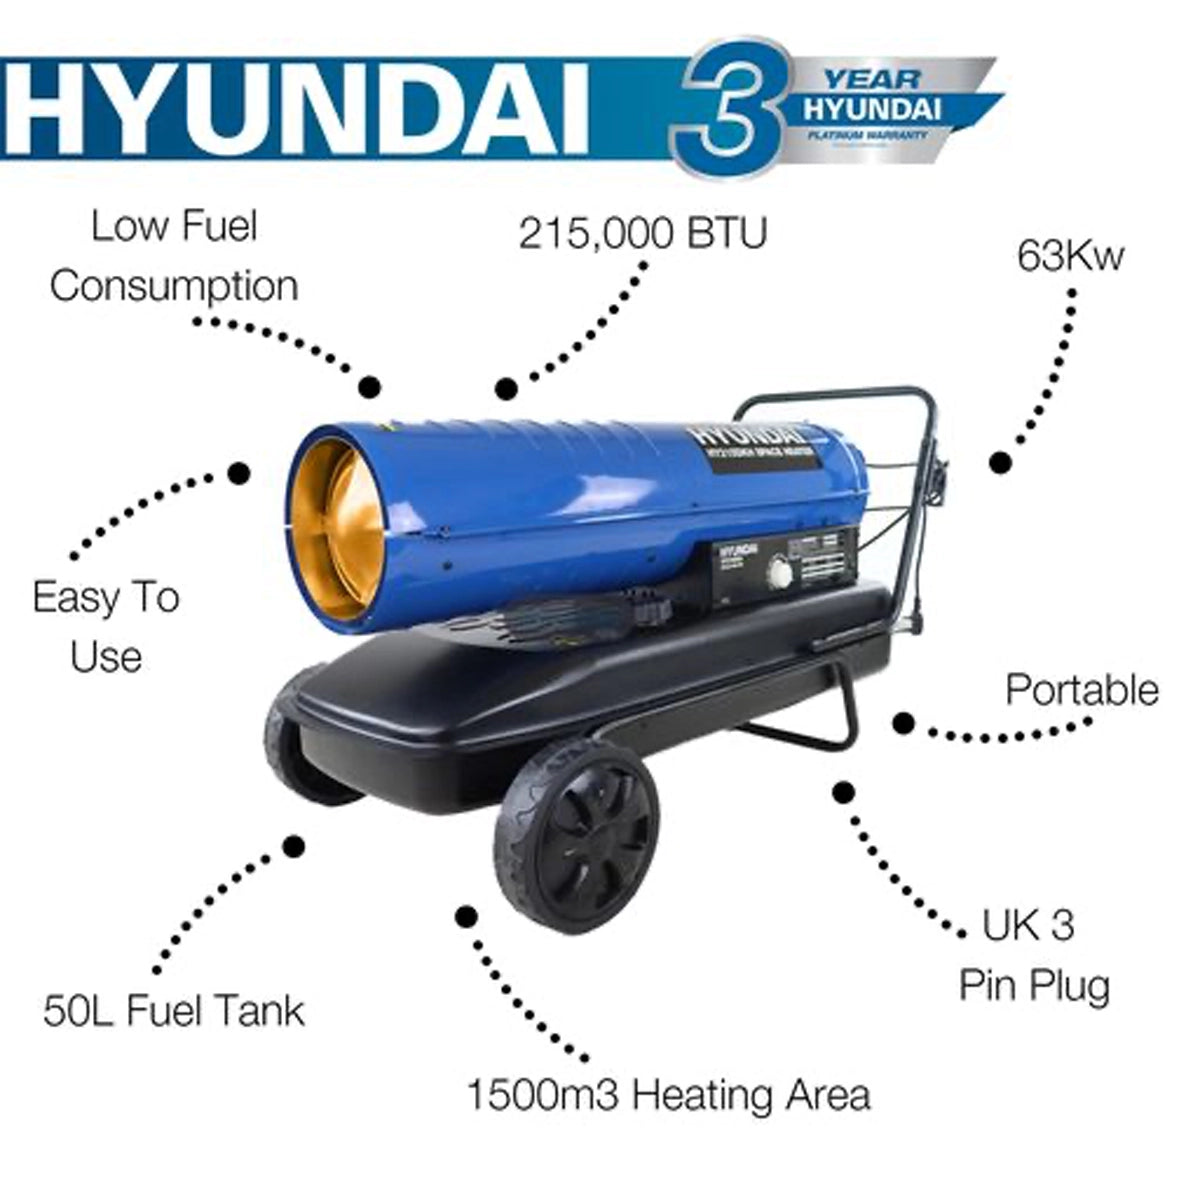 Hyundai HY215DKH 63kW Diesel/Kerosene Space Heater 215,000BTU